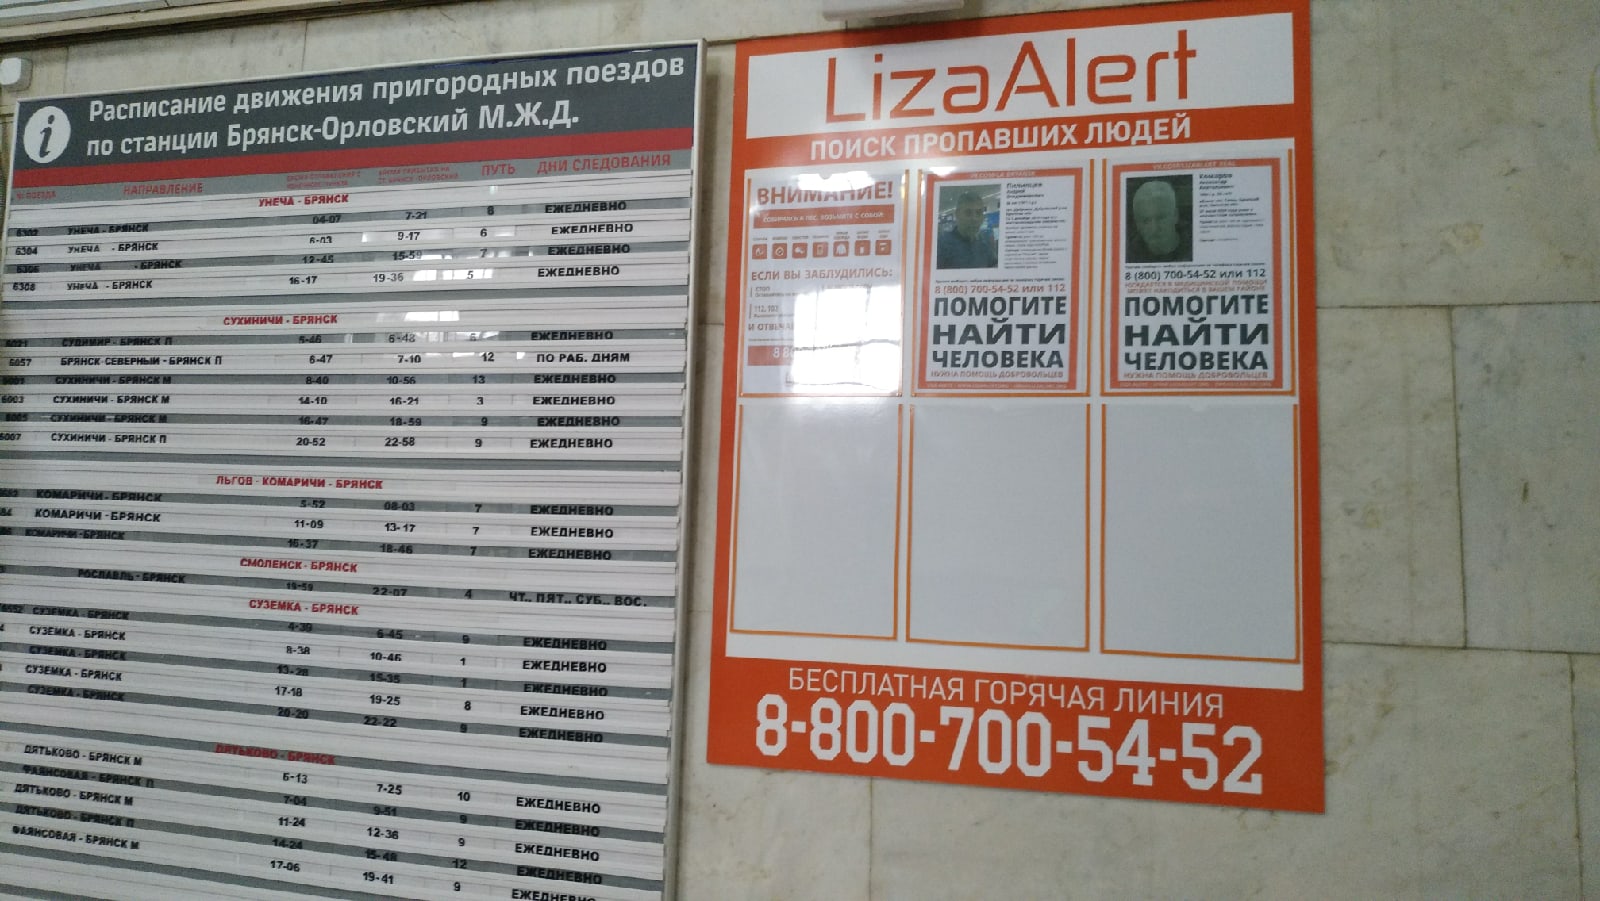 Поисковый отряд “ЛизаАлерт” разместил стенды с информацией о разыскиваемых на вокзалах в Брянской области